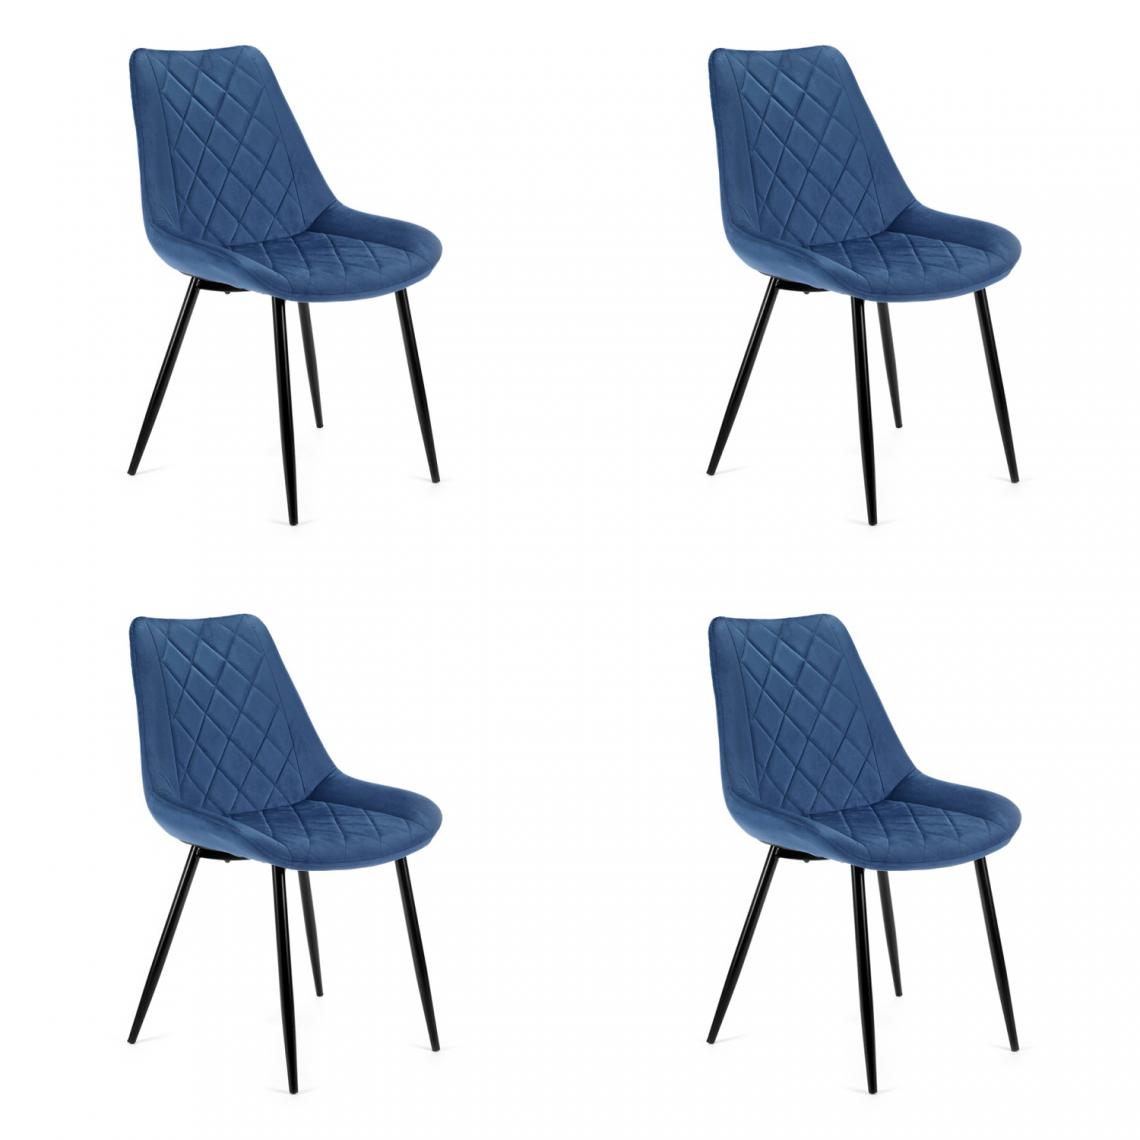 Hucoco - TERLO - Chaise rembourrée 4 pcs style moderne salon/salle à manger - 84x44x43 - Pieds en métal - Bleu - Chaises